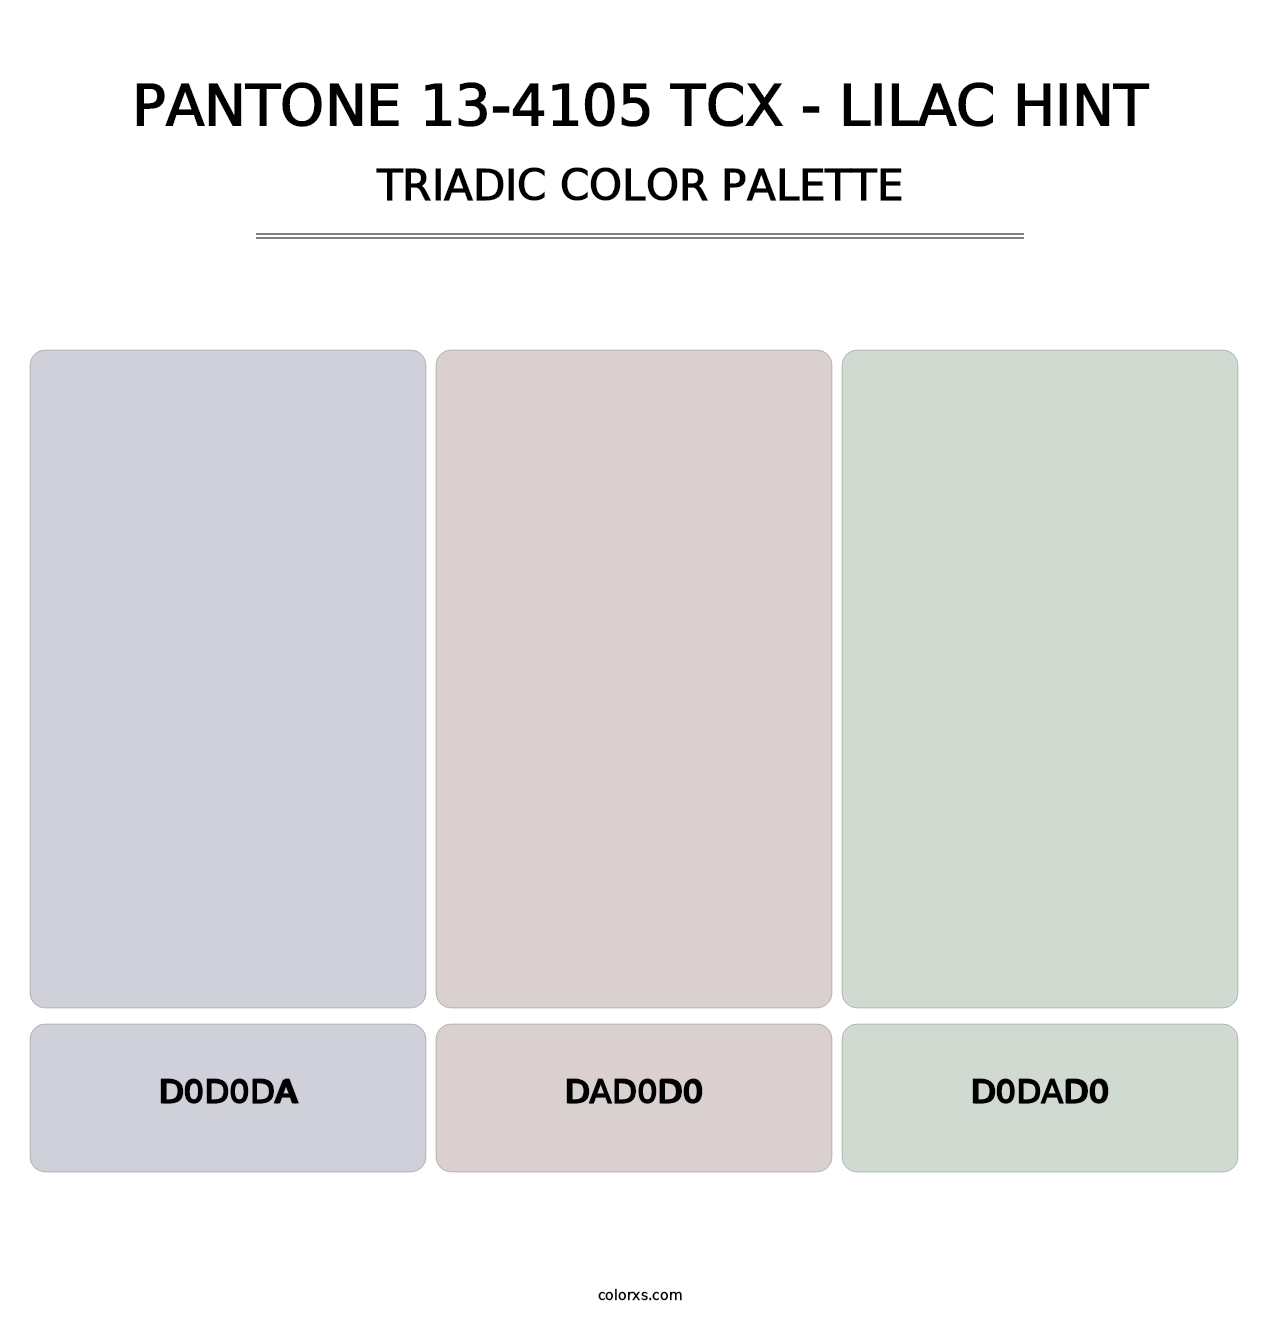 PANTONE 13-4105 TCX - Lilac Hint - Triadic Color Palette